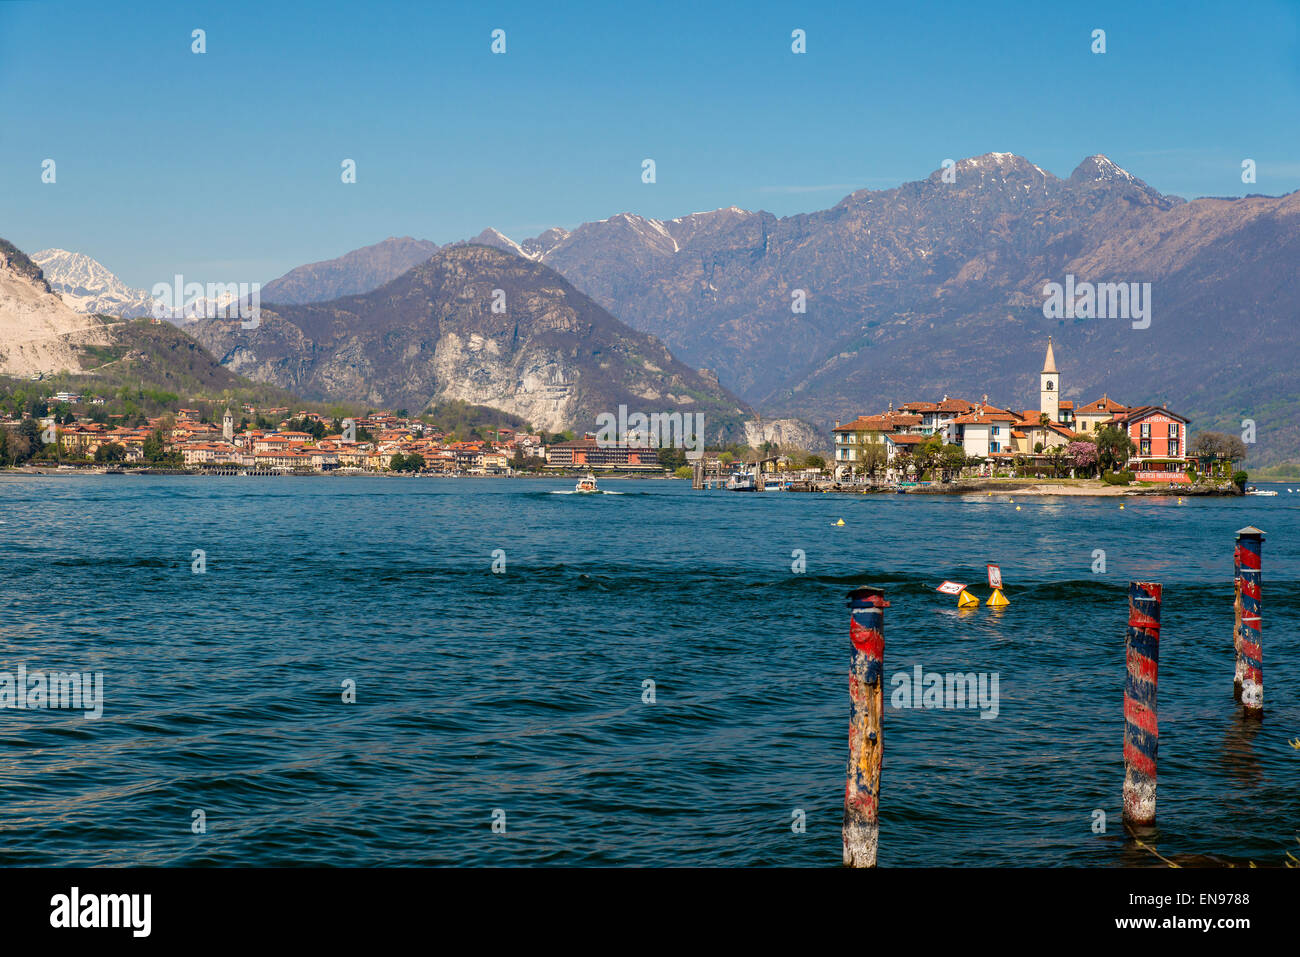 Scenic view of Lake Maggiore with Isola dei Pescatori or Fishermen’s Island, Stresa, Piedmont, Italy Stock Photo